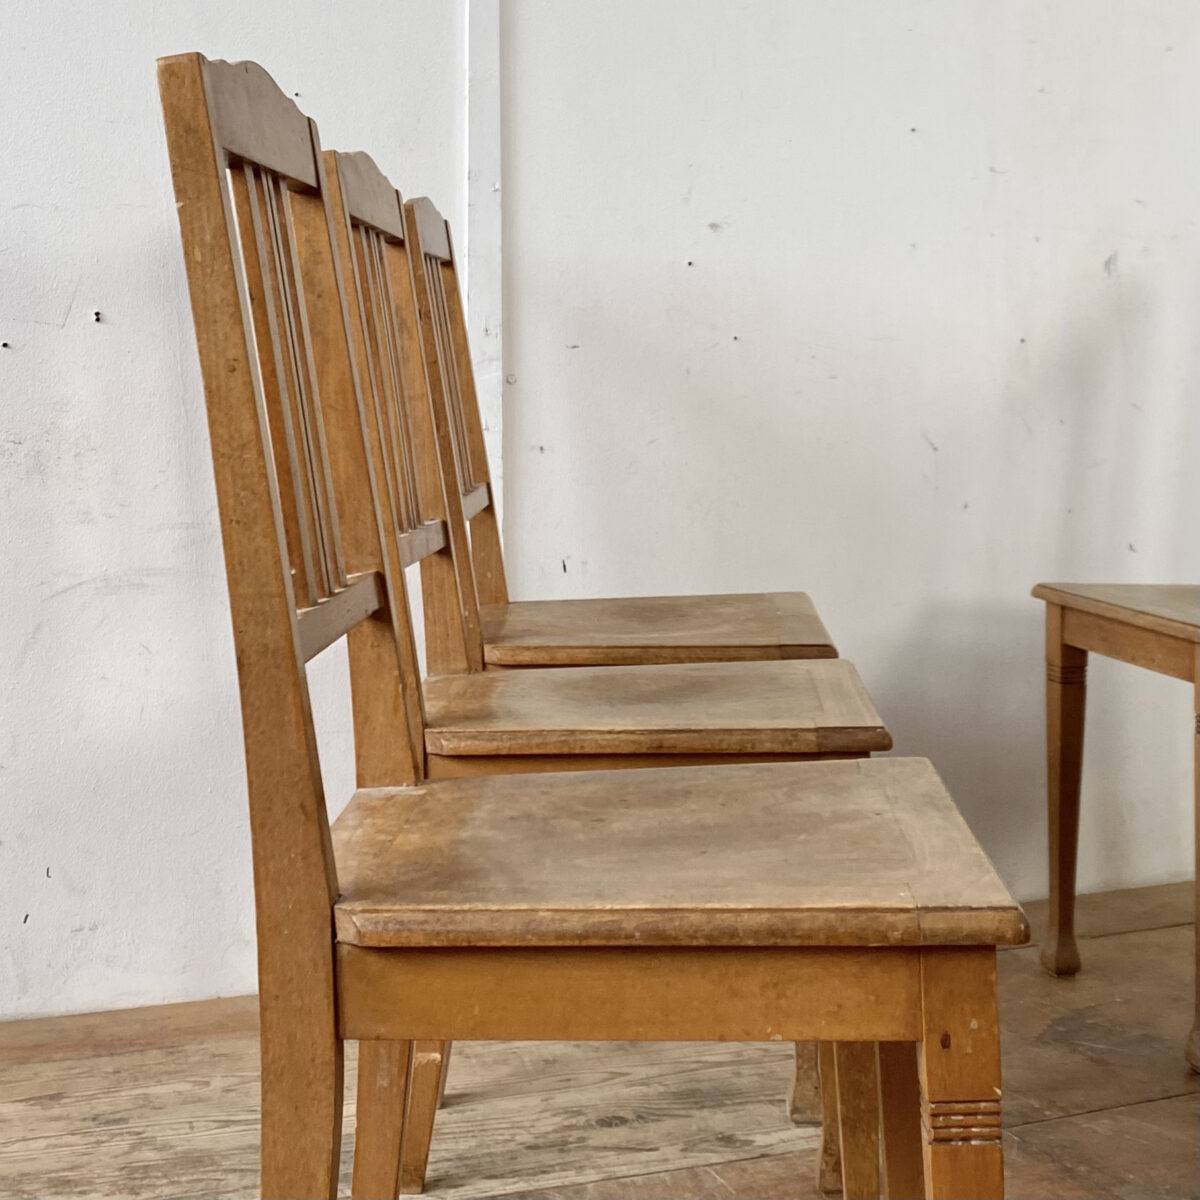 Deuxieme.shop biedermeierstühle. Luterma made in estonia. 6er Set Buchenholz Stühle. Preis fürs Set. Die Stühle sind in stabilem Zustand mit Gebrauchsspuren und Alterspatina. 